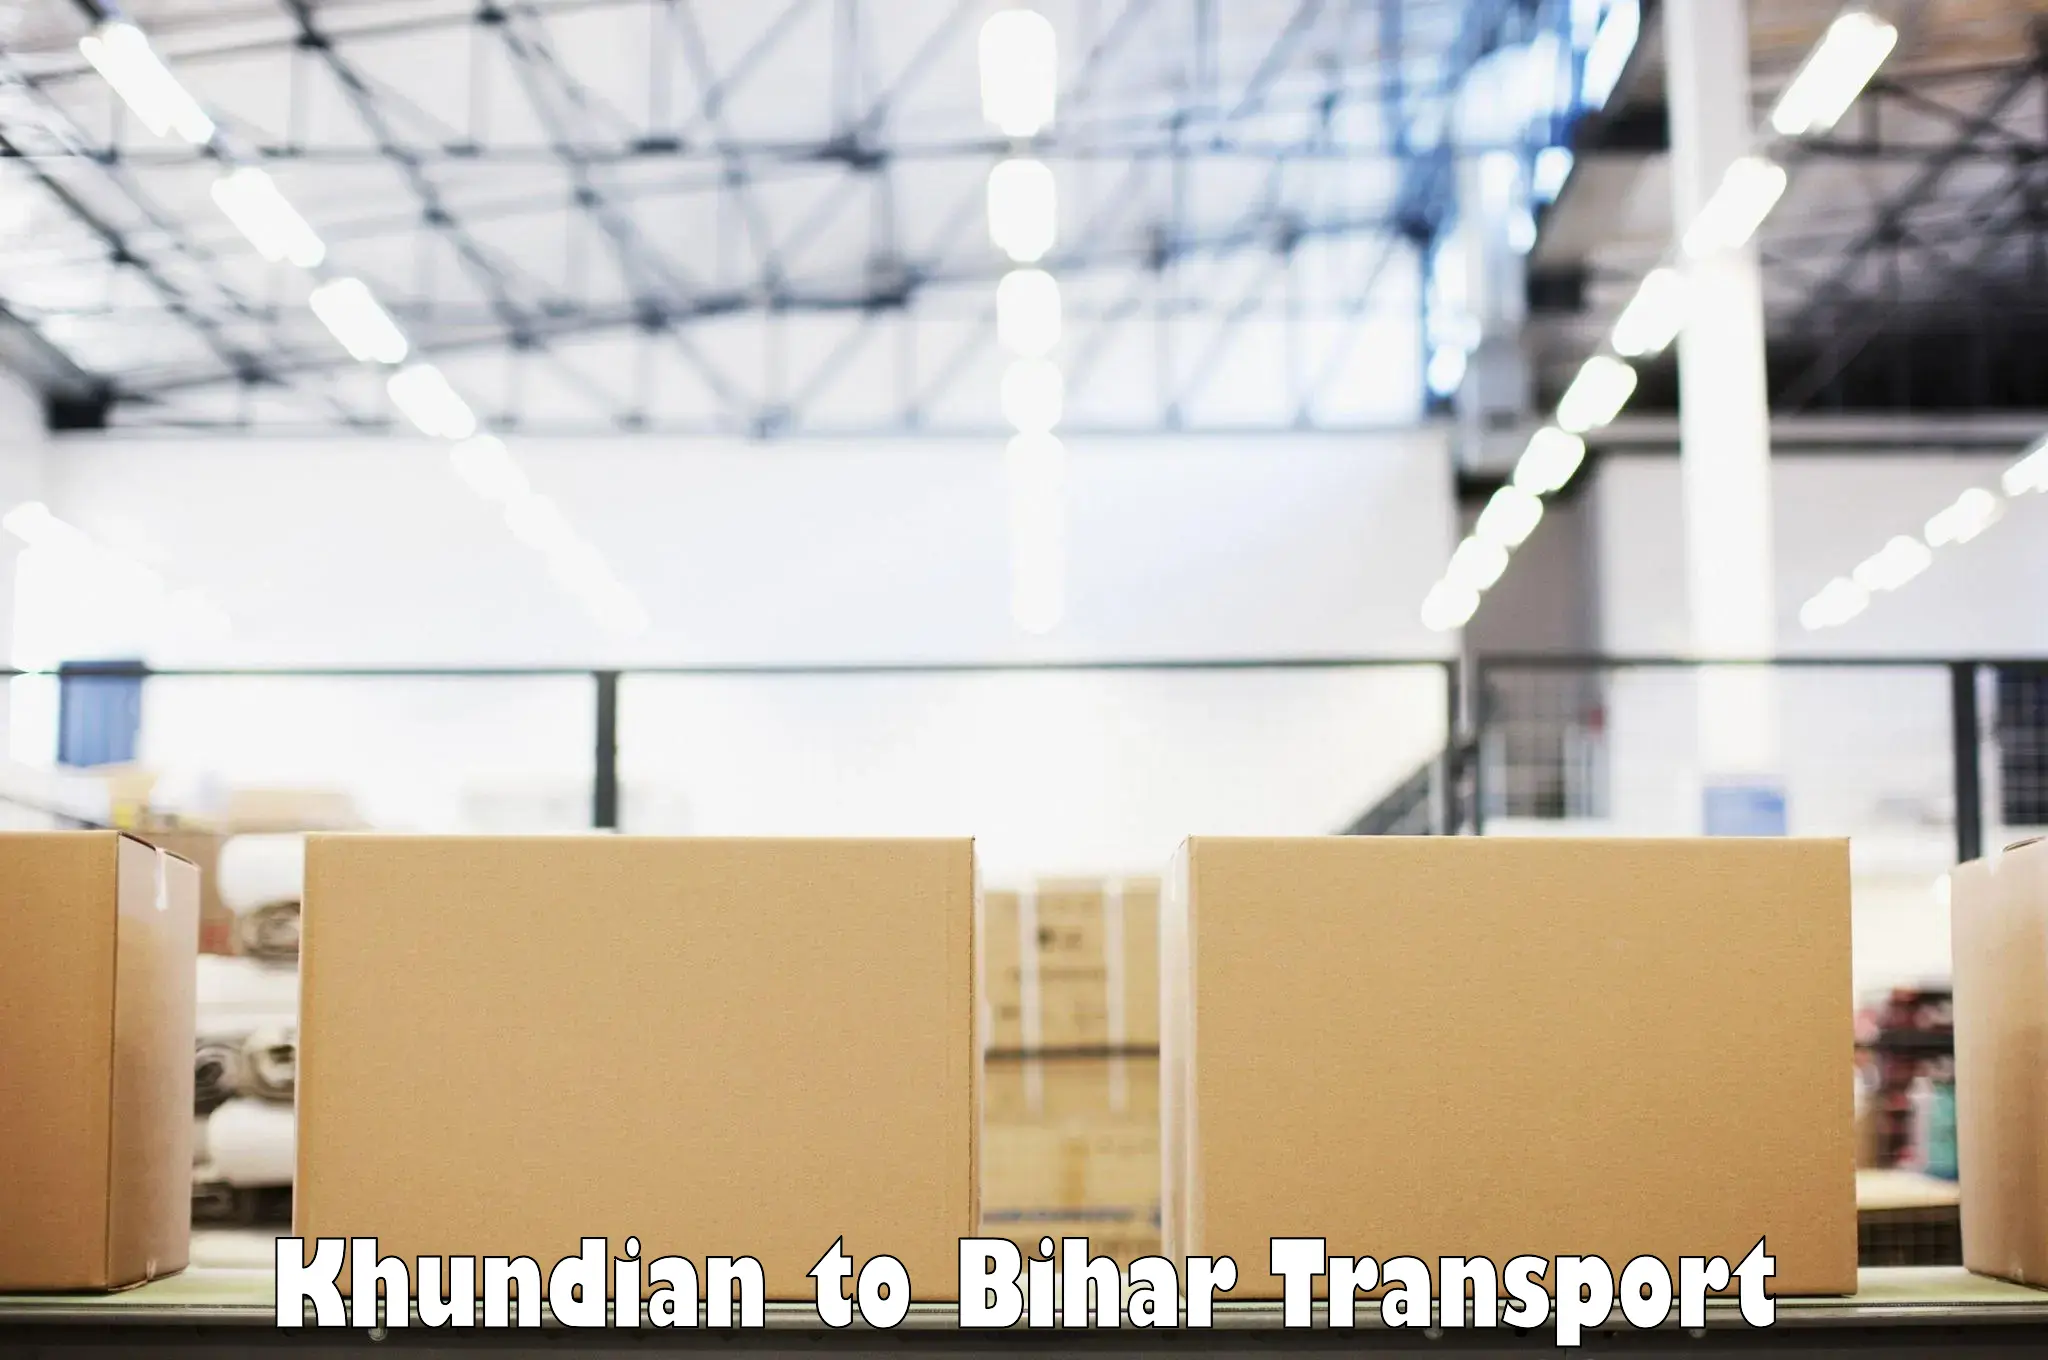 Land transport services in Khundian to Jaynagar